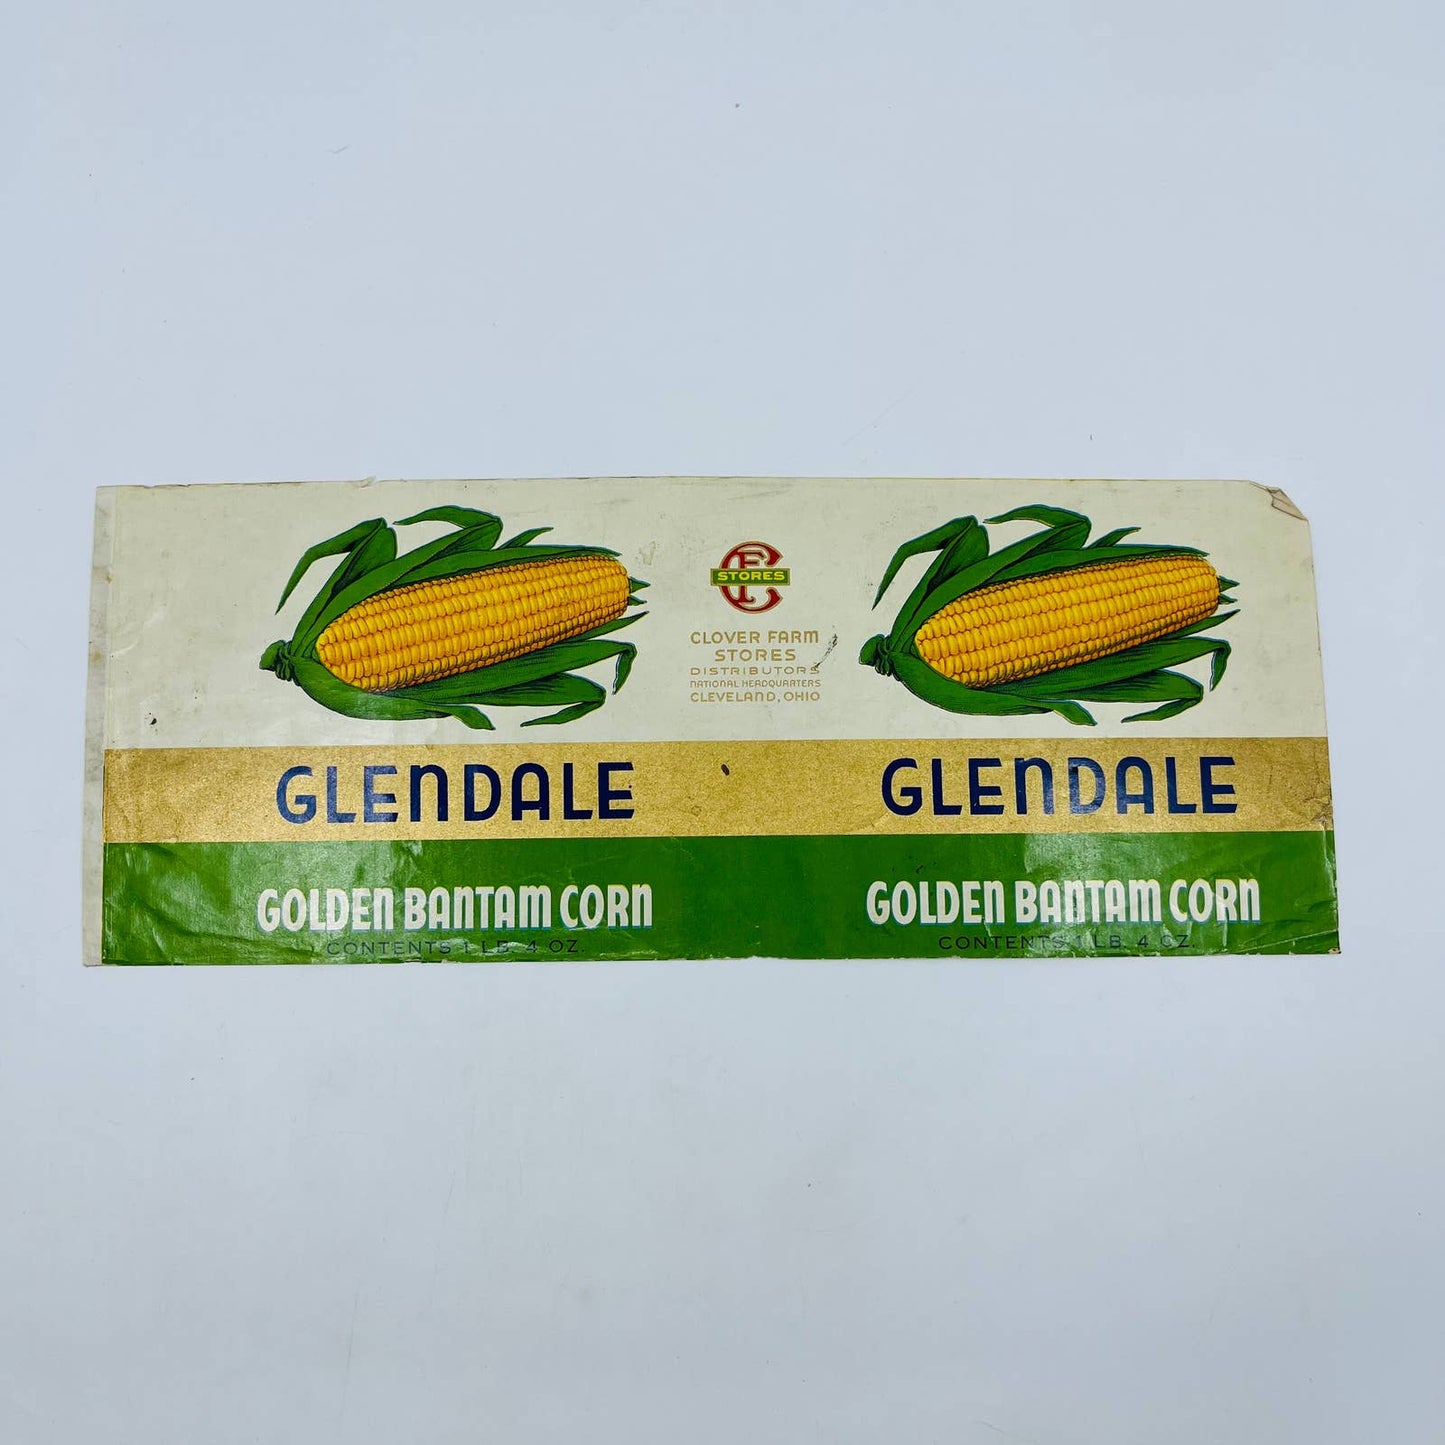 Glendale Brand Golden Bantam Corn Label Clover Farm Stores Cleveland OH EA4